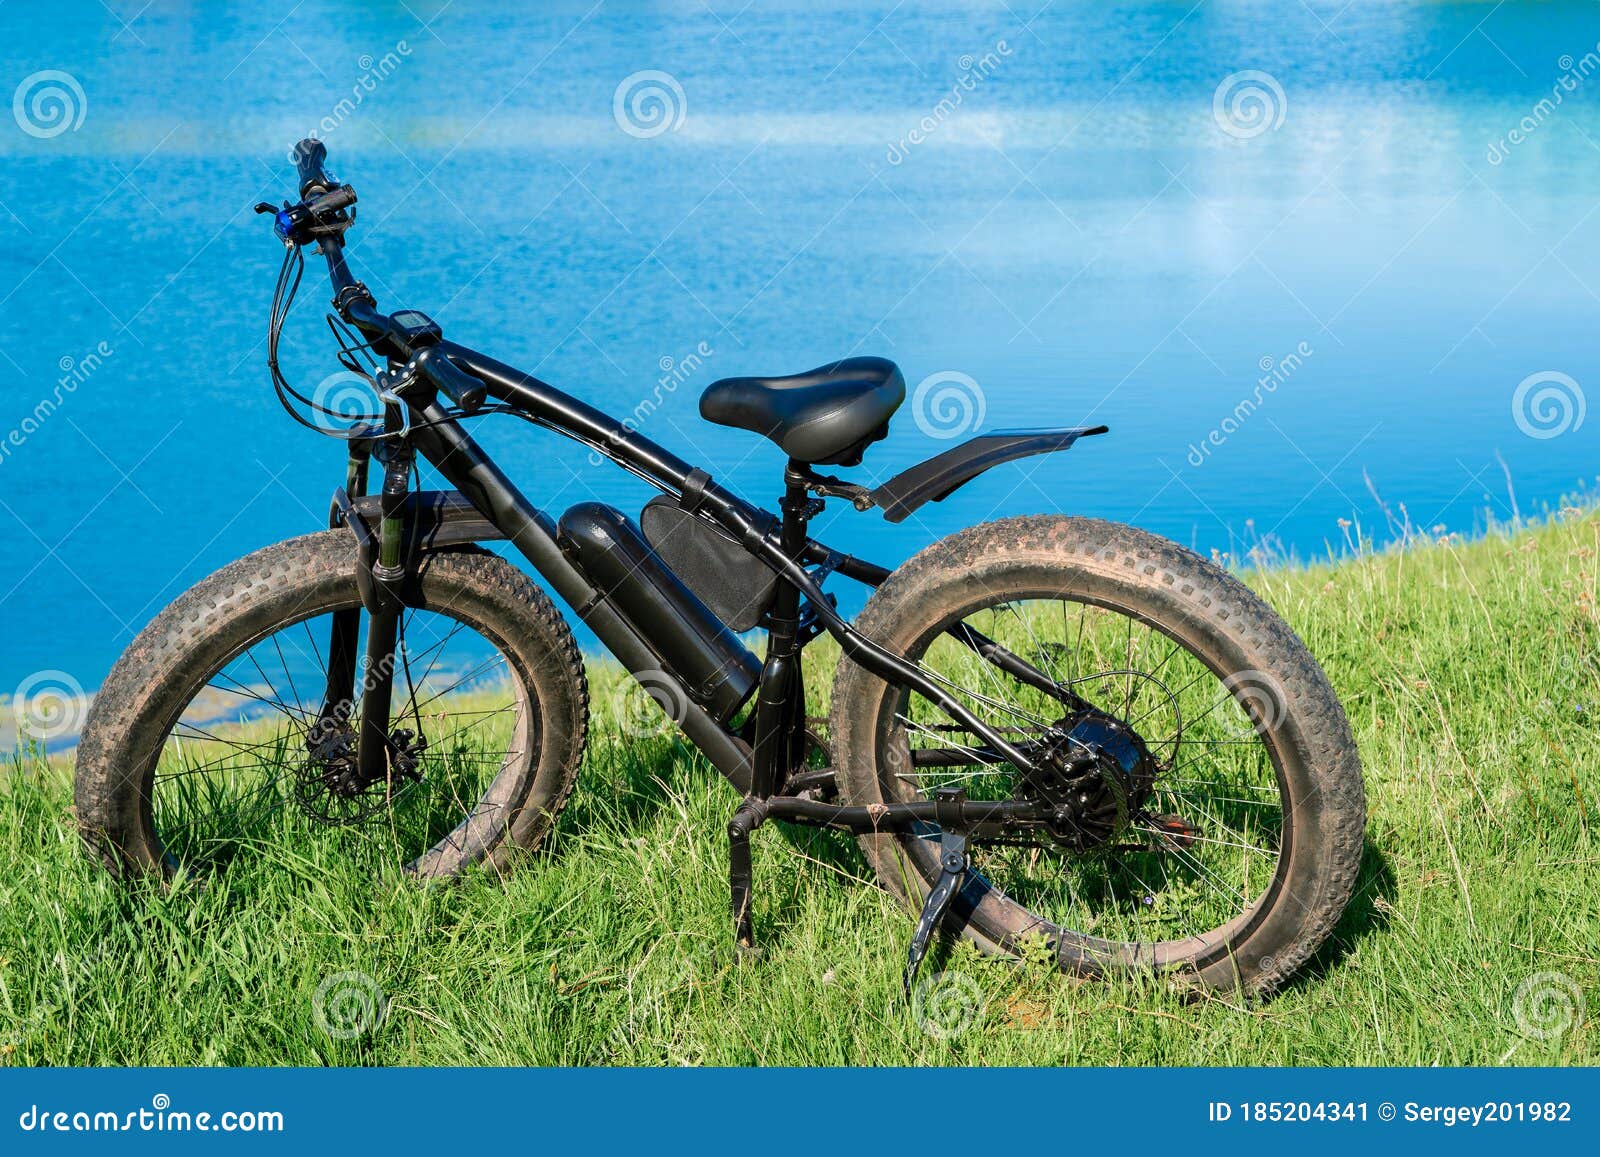 Pa Ongemak Medic Zwarte Elektrische Fiets Met Dikke Wielen Op Het Gras Bij Het Meer. Fiets  Stock Afbeelding - Image of pedalen, fietsen: 185204341